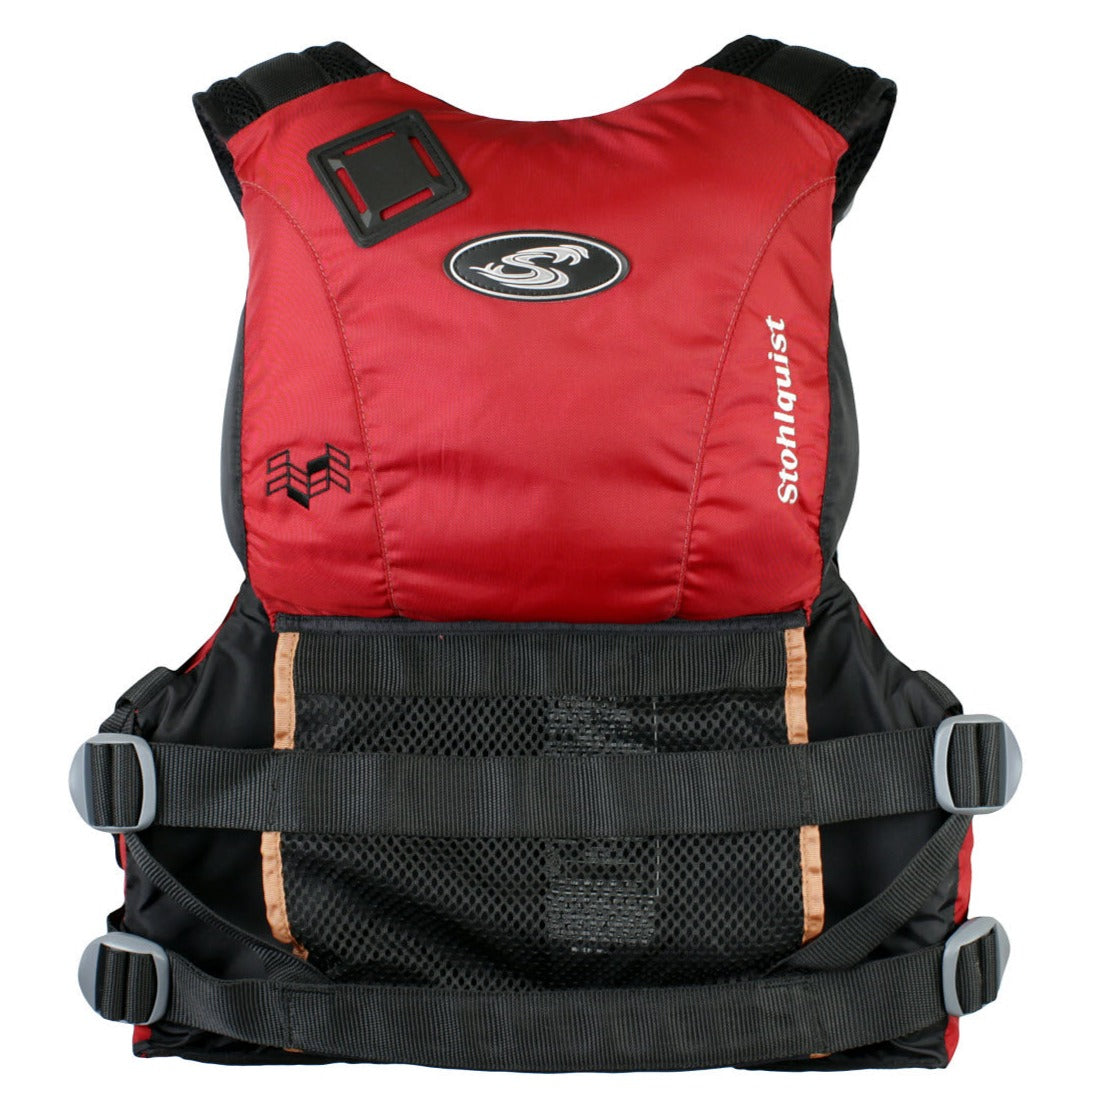 Stohlquist Trekker Men's Life Jacket PFD - Red Back